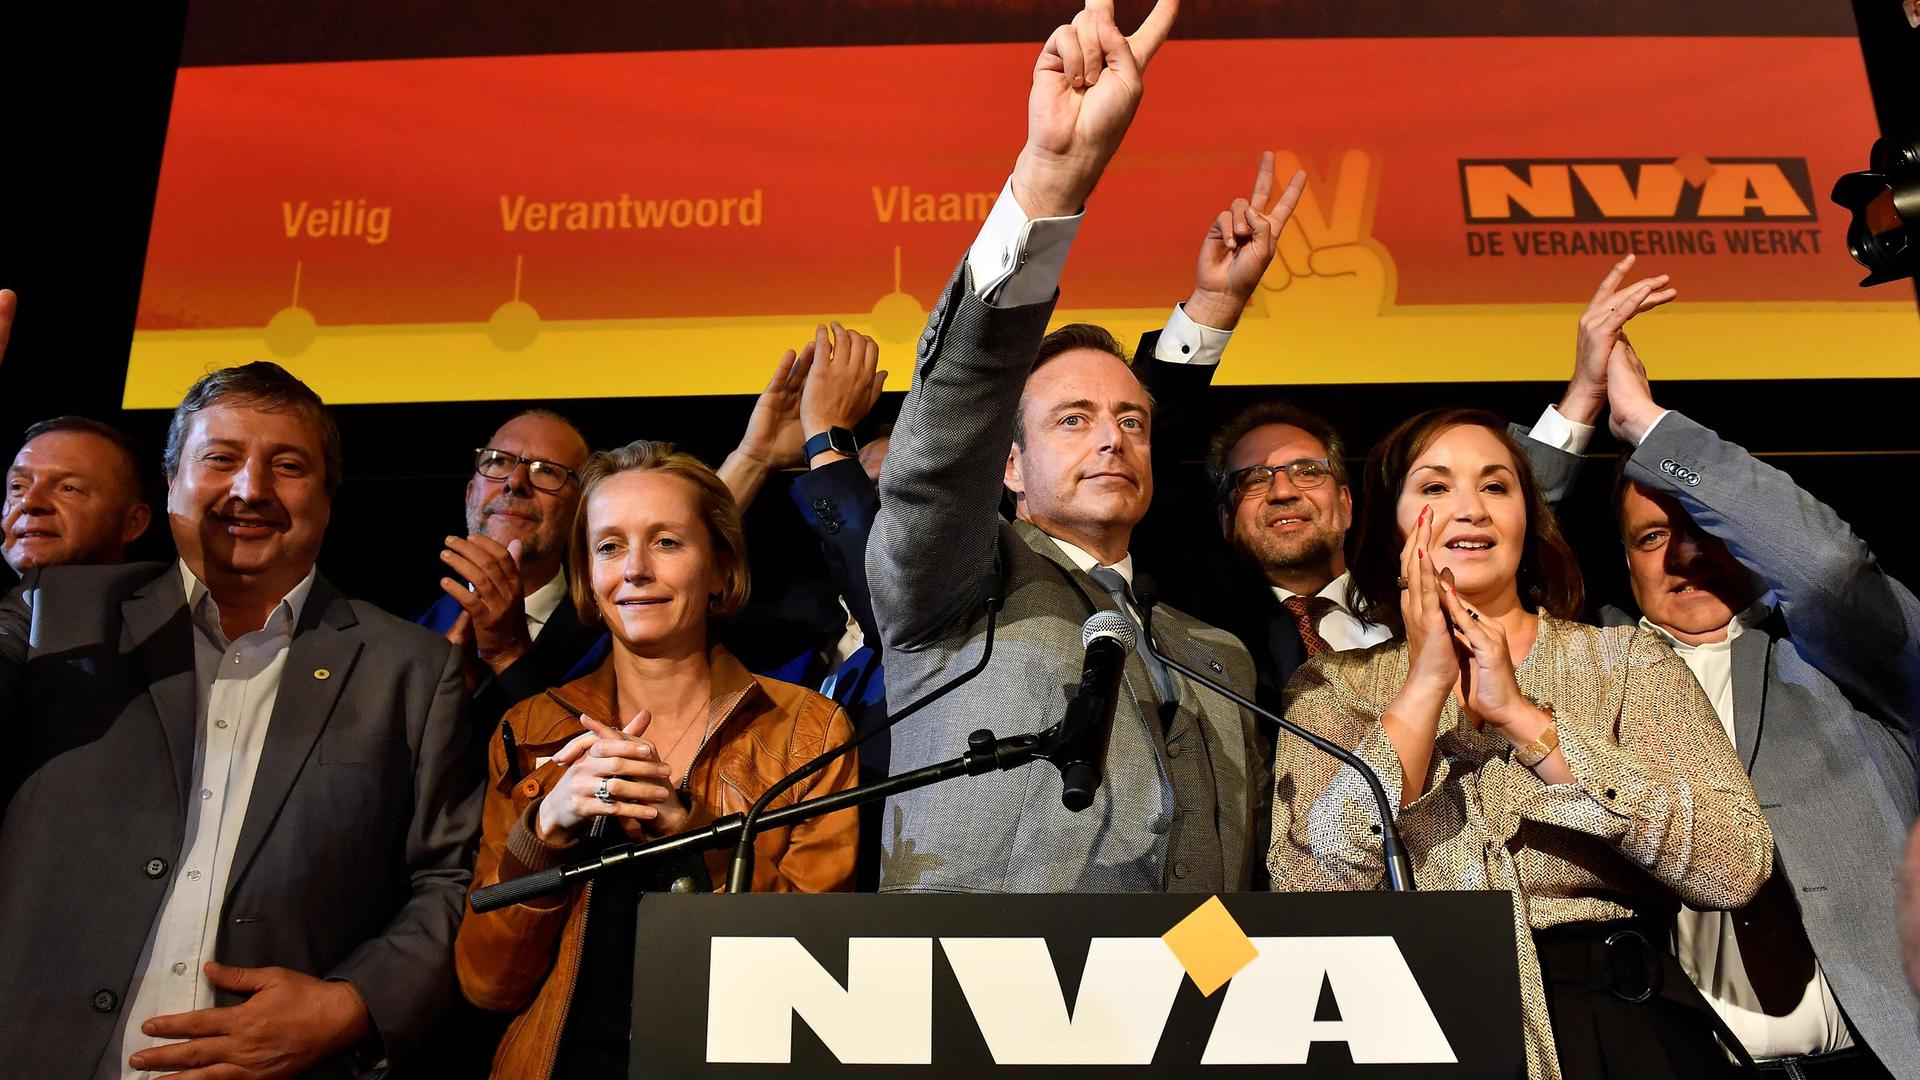 Pour Bart De Wever et la N-VA, le «confédéralisme» constitue plus que jamais la solution.